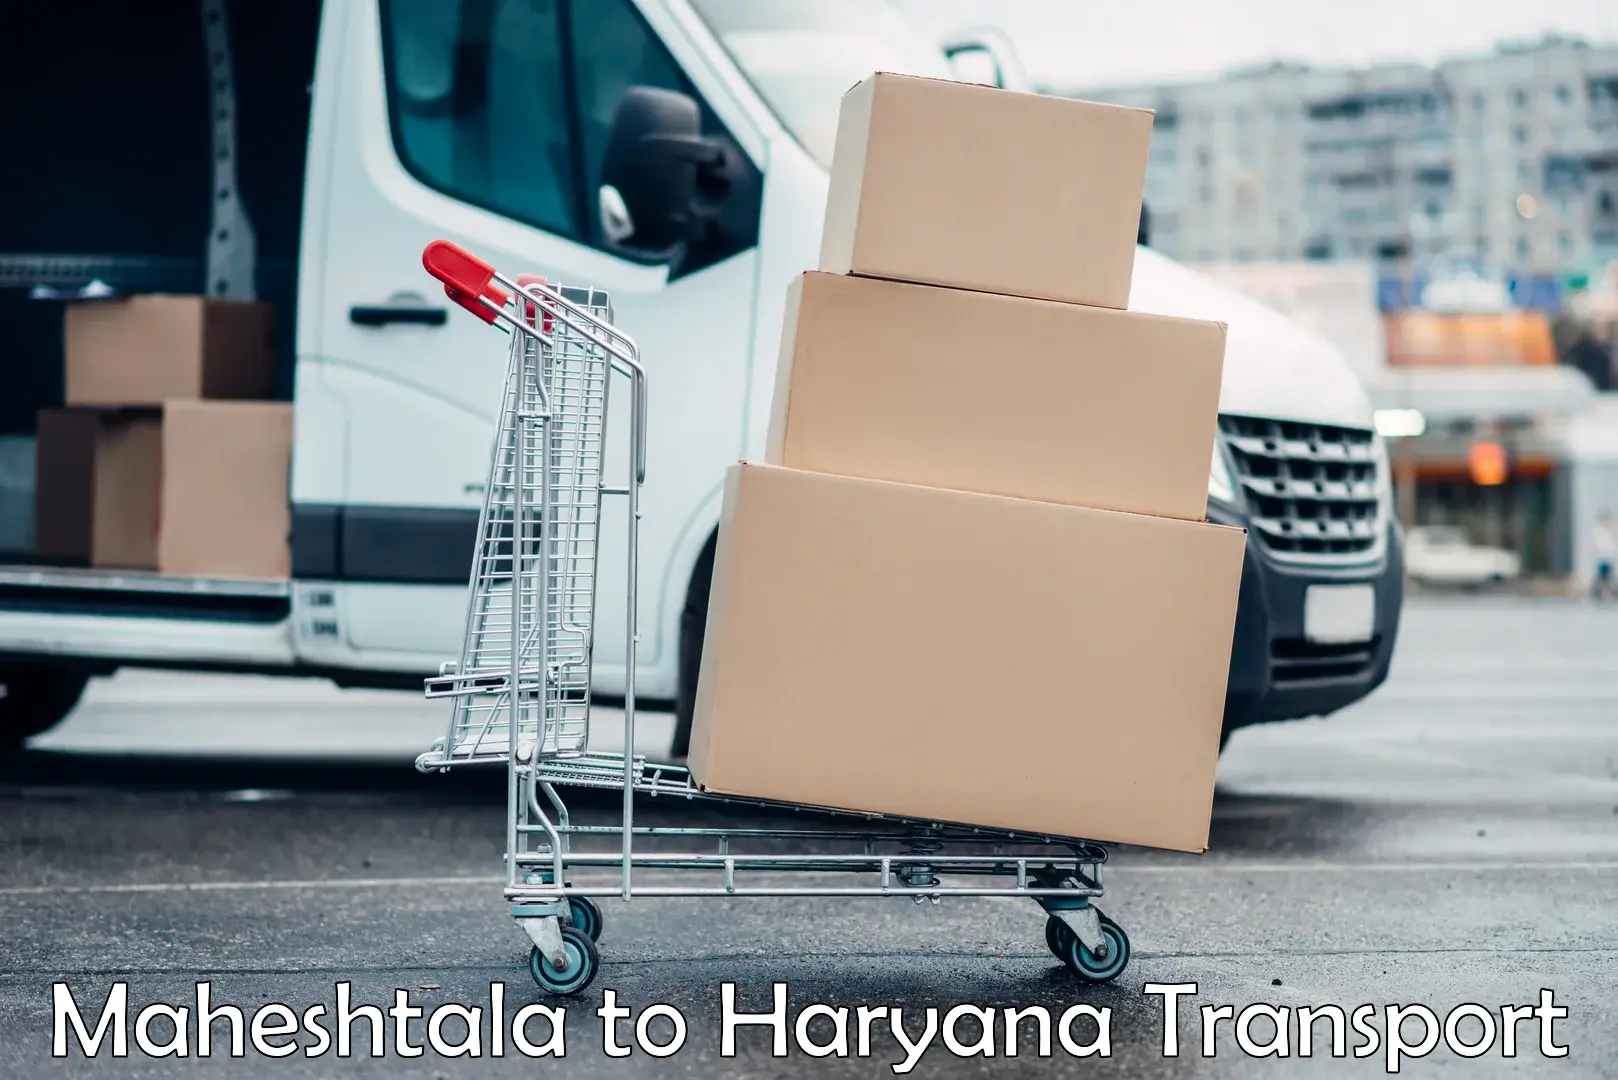 Daily transport service Maheshtala to NCR Haryana